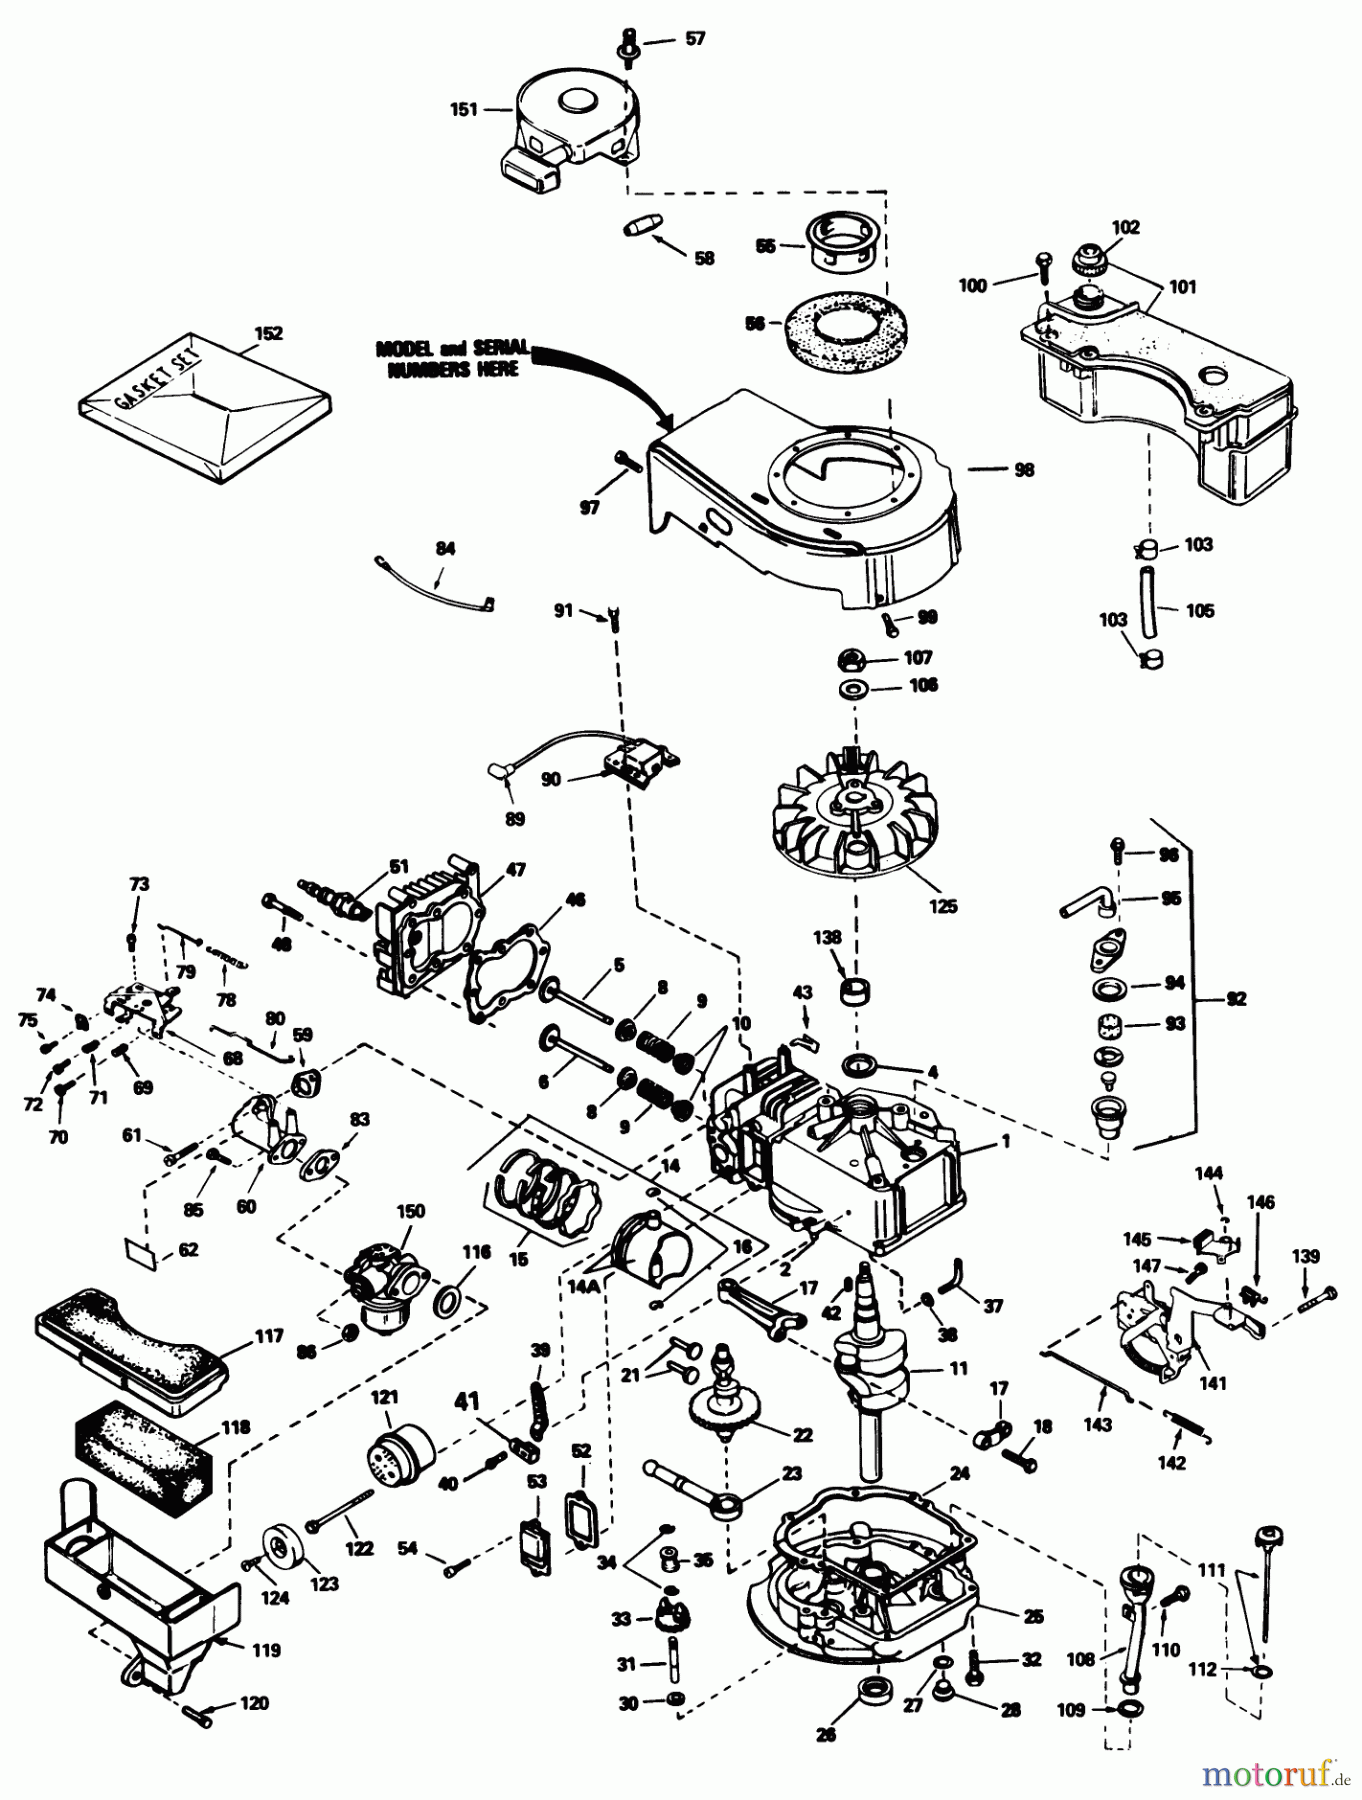  Toro Neu Mowers, Walk-Behind Seite 1 20586 - Toro Lawnmower, 1985 (5000001-5999999) ENGINE TECUMSEH MODEL TVS90-43228D